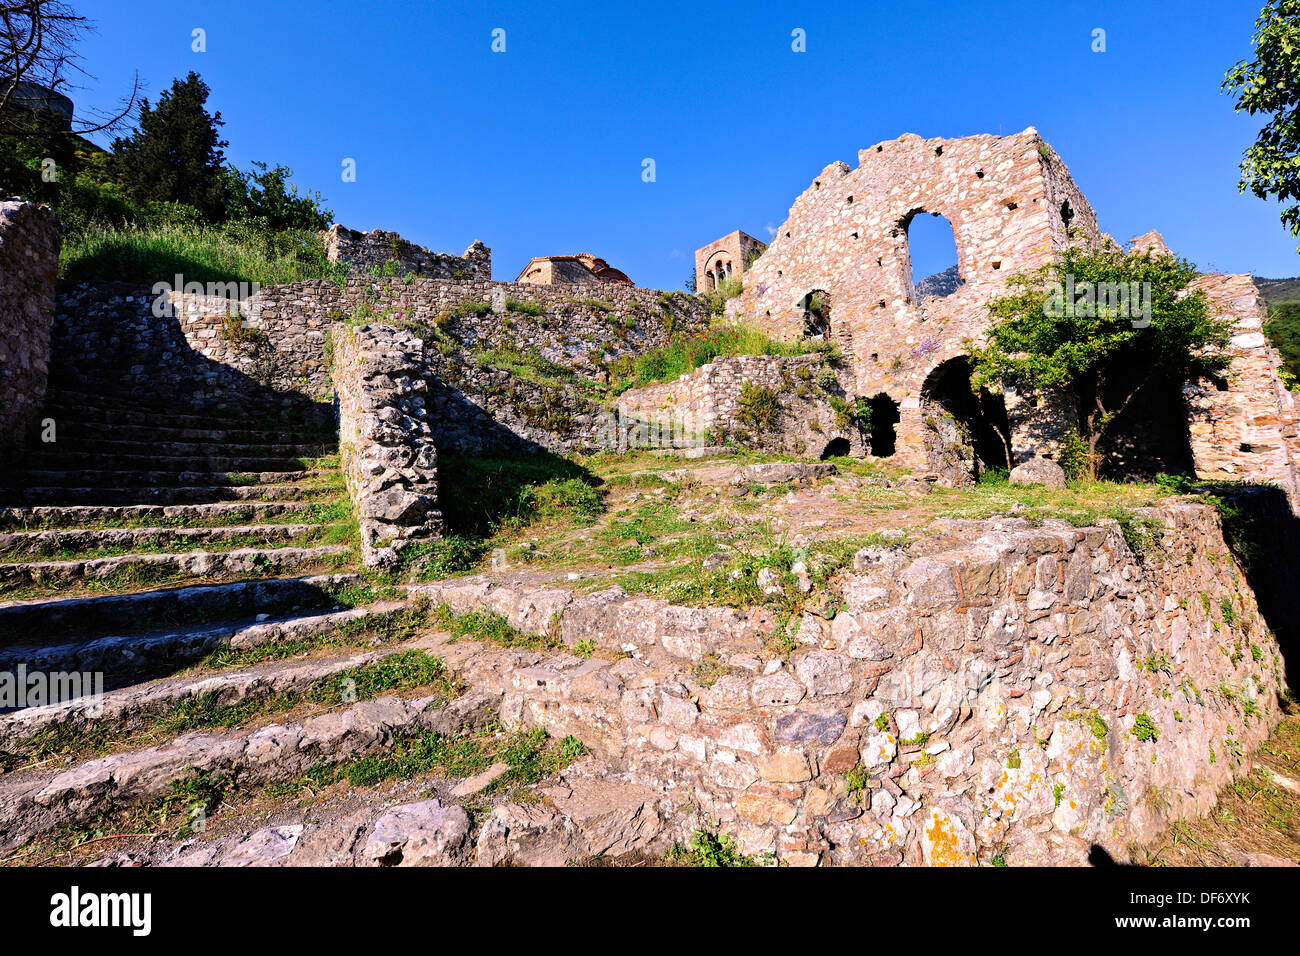 Les ruines de la ville byzantine de Mythras, près de Sparte, Grèce Banque D'Images